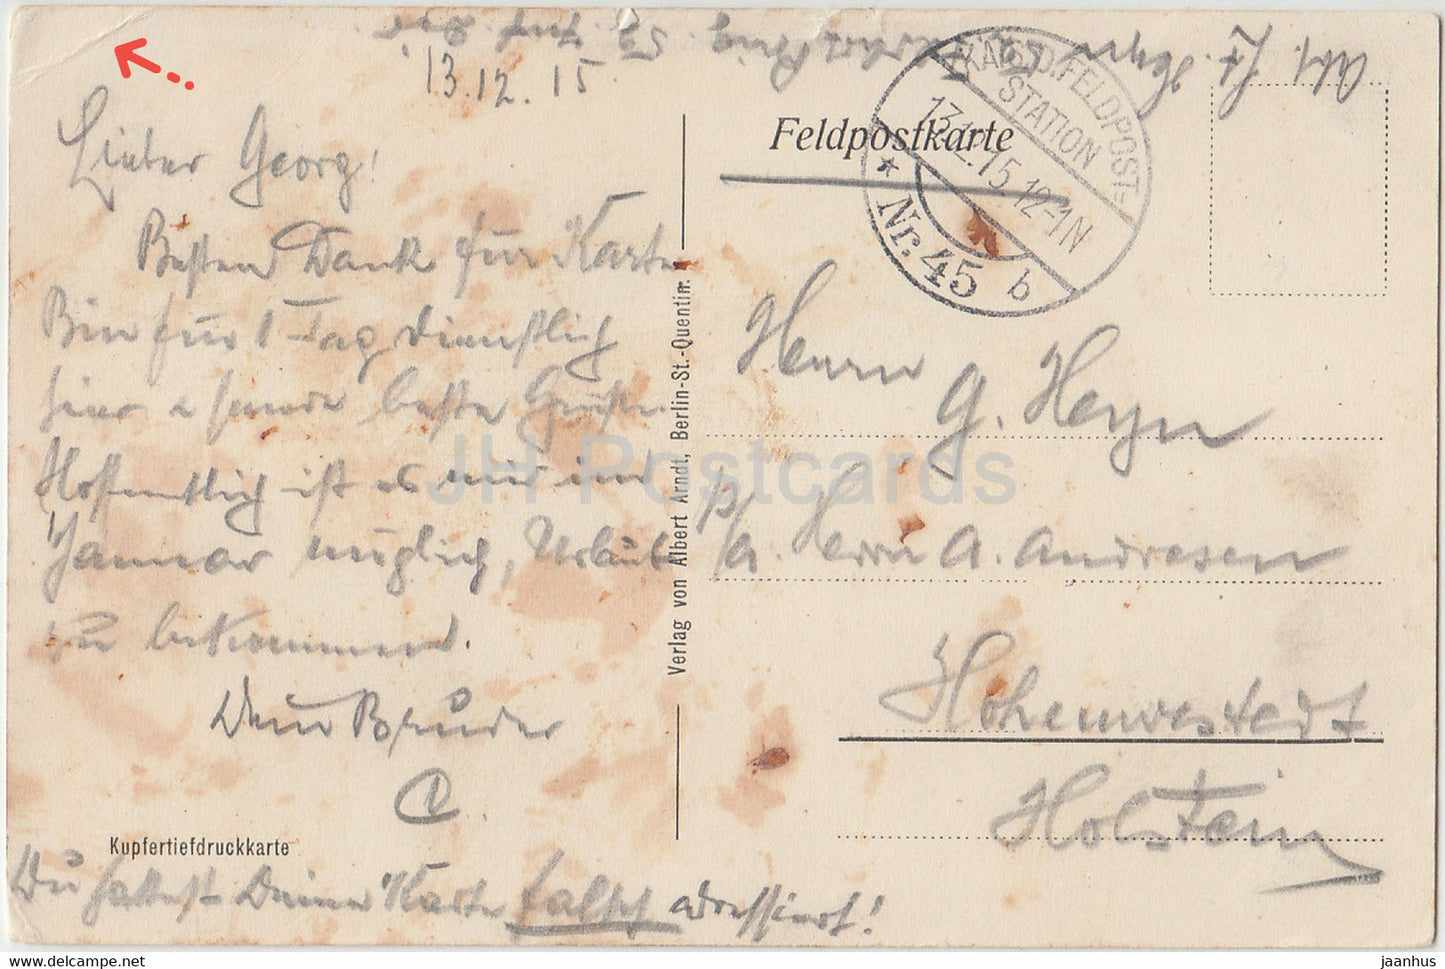 Gruss aus St Quentin - Kathedrale - Kathedrale - Feldpost - alte Postkarte - 1915 - Frankreich - gebraucht